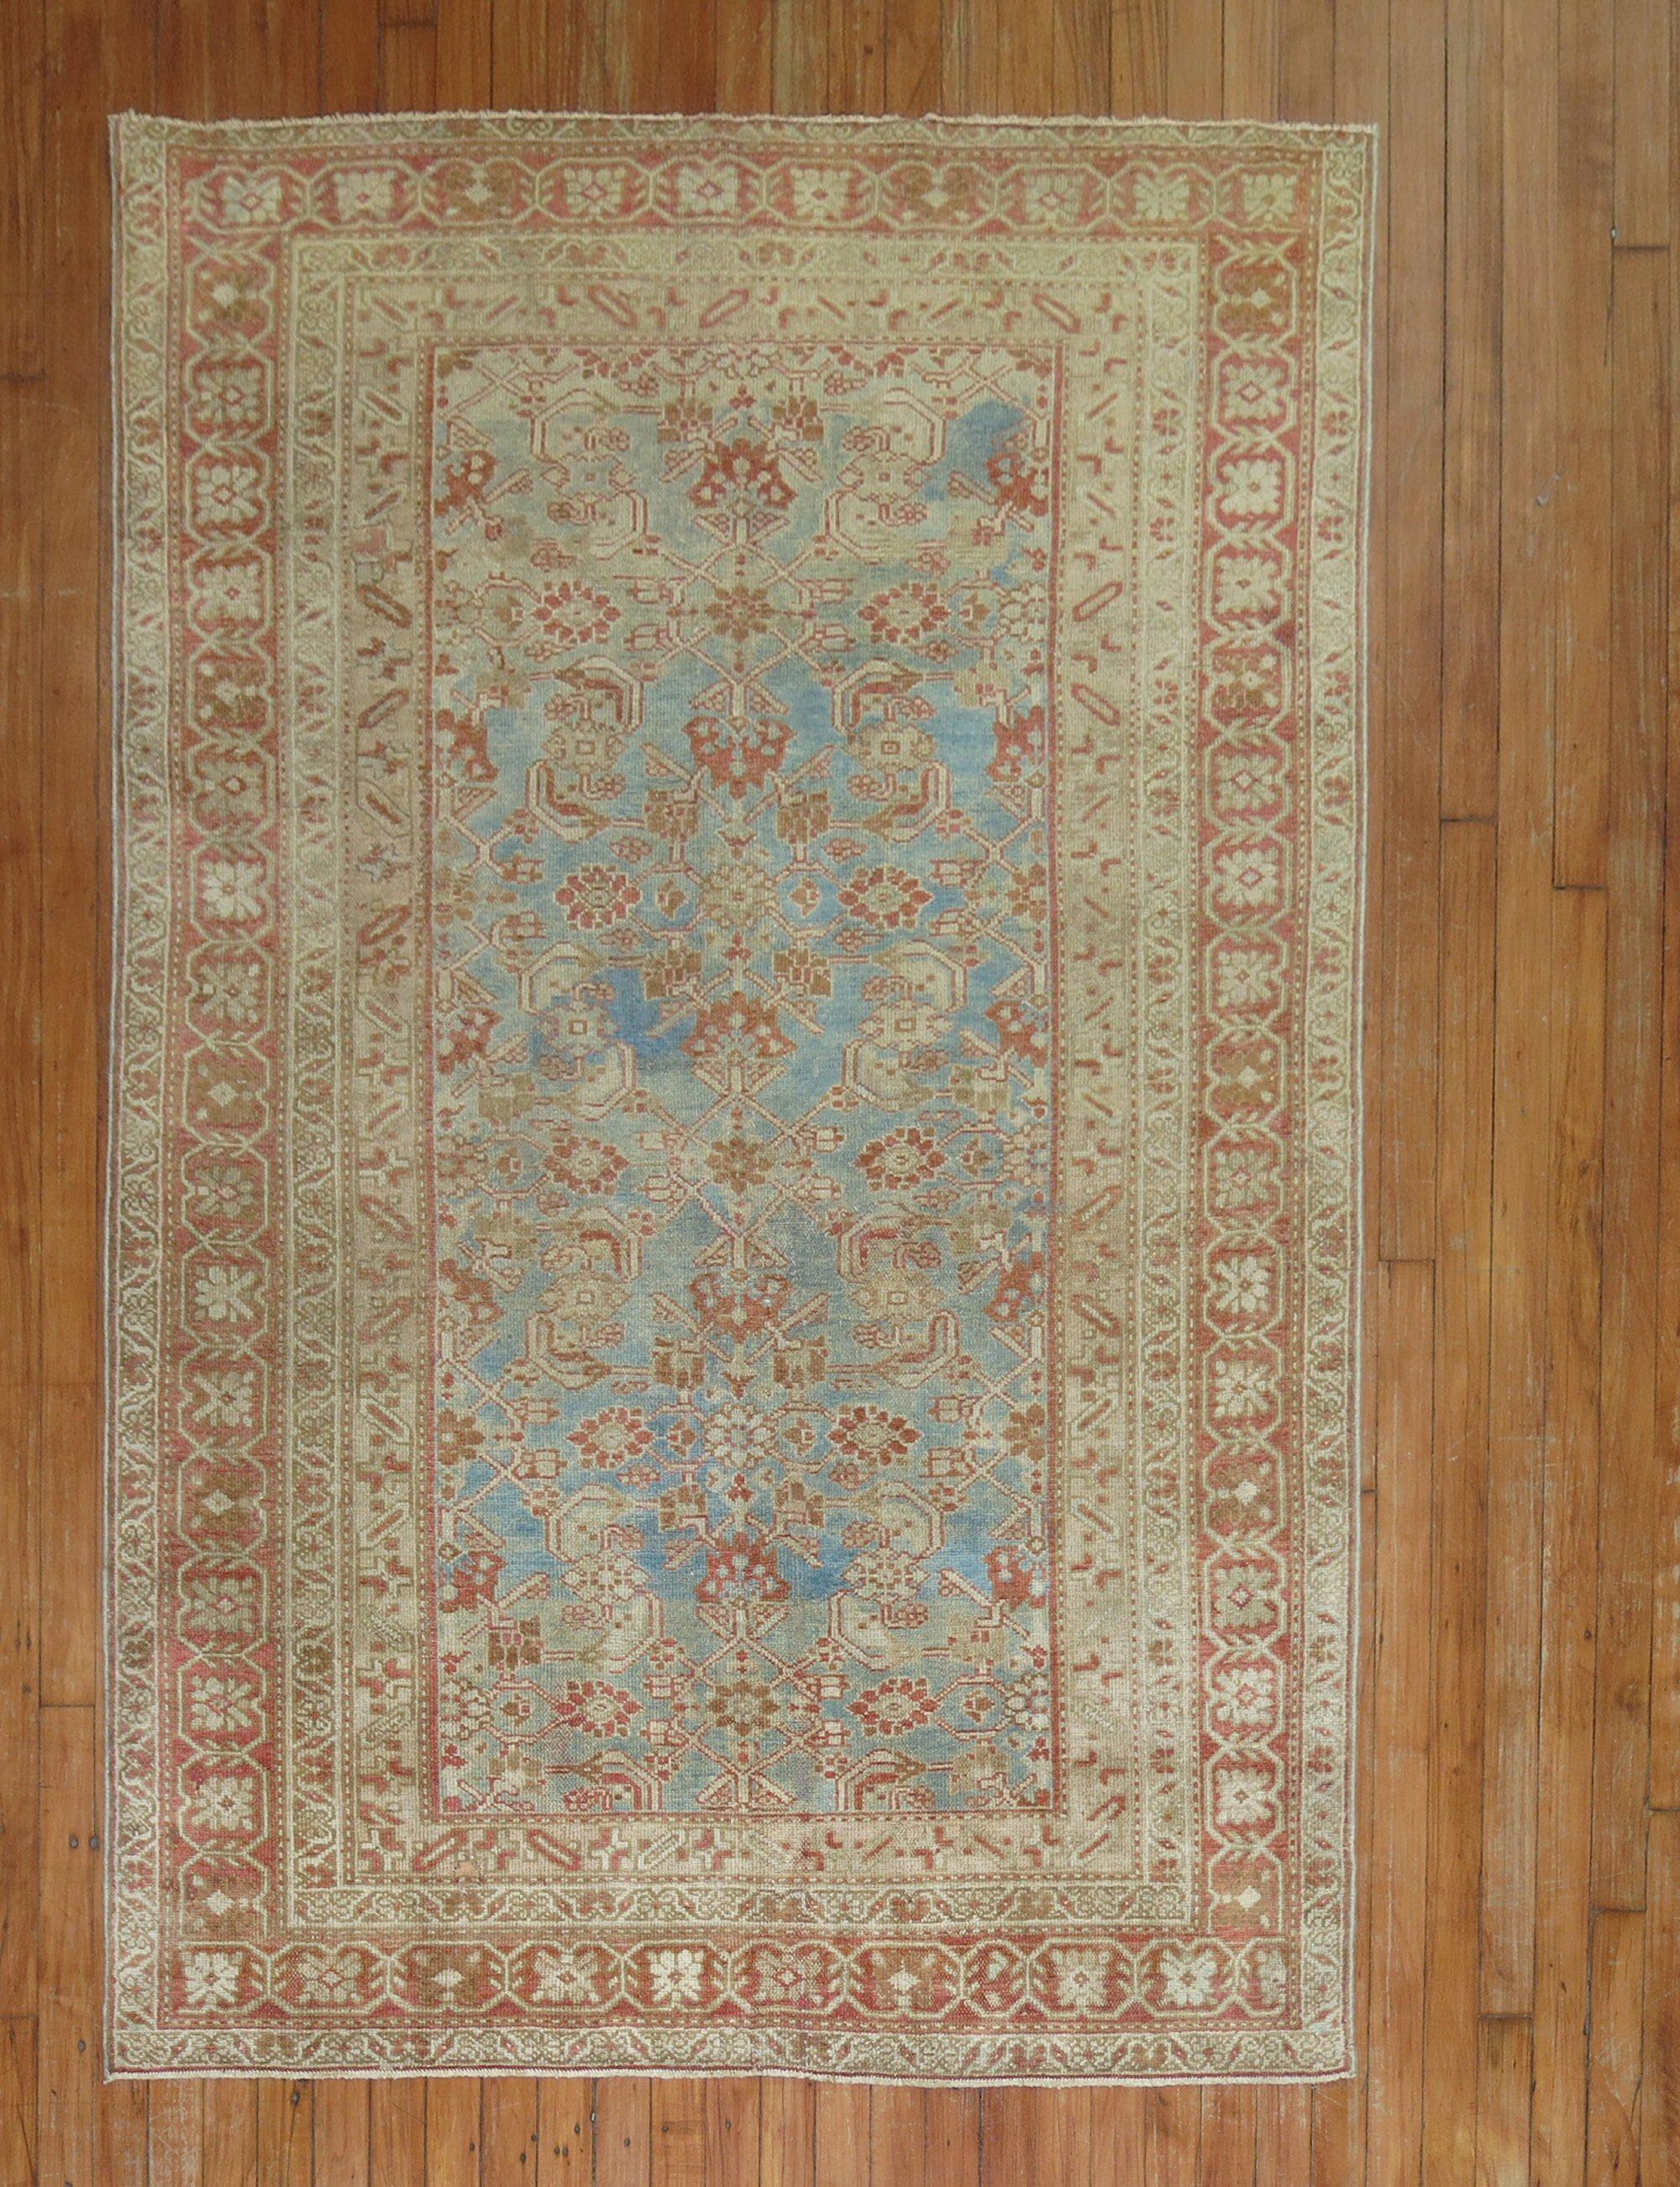 Hochdekorativer antiker persischer Malayer-Teppich aus dem frühen 20. Jahrhundert mit hellblauem Grund und rostfarbenen Akzenten auf einem traditionellen Allover-Herati-Muster

Maße: 4'3' x 6'4